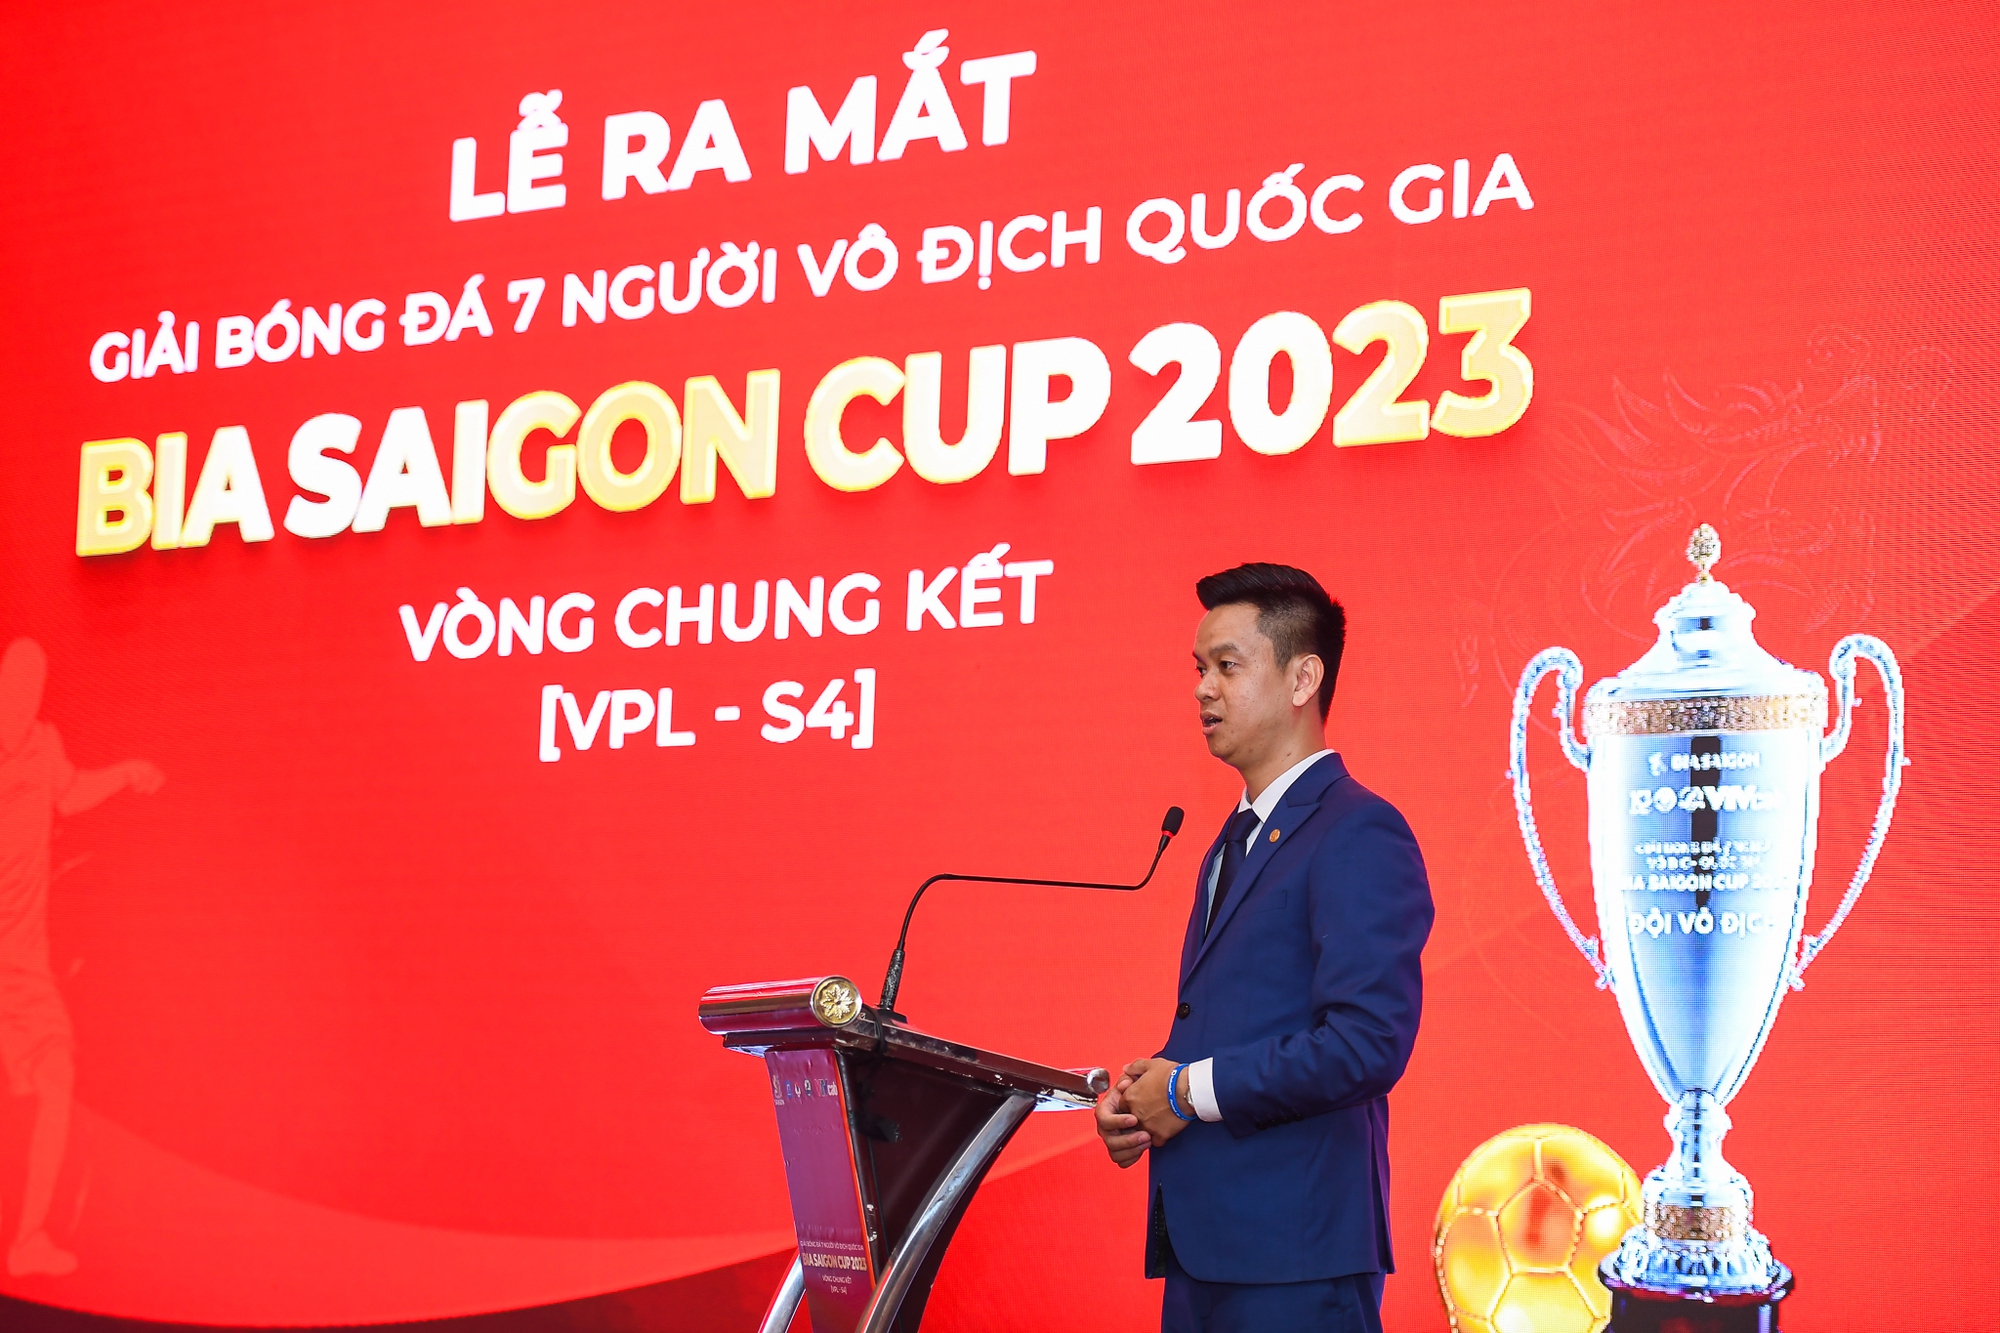 &quot;Bát hùng&quot; tranh tài tại VCK Giải bóng đá 7 người vô địch quốc gia - Bia Saigon Cup 2023  - Ảnh 3.